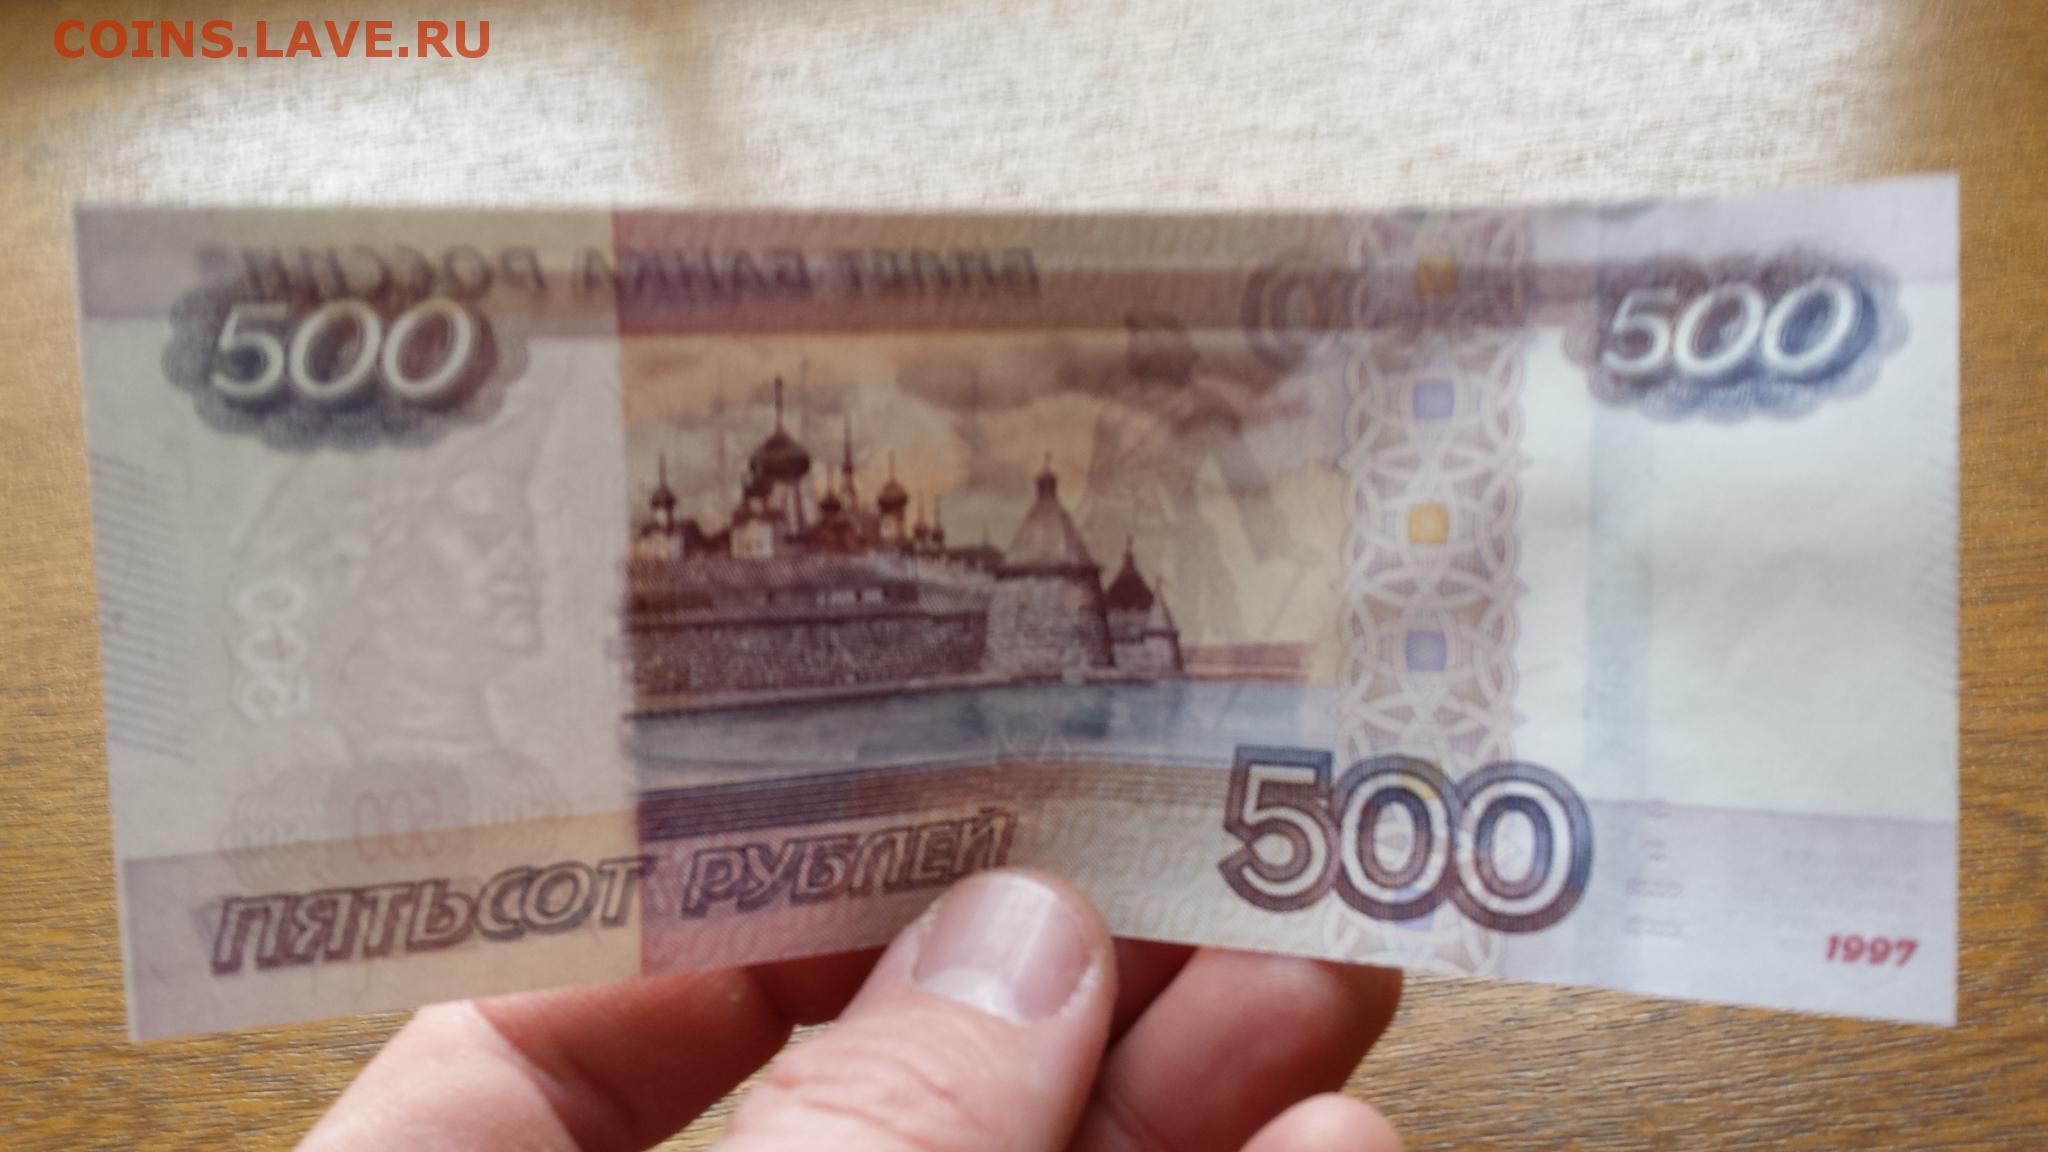 Взять долг 500 рублей. 500 Рублей. Купюра 500 рублей. 500 Рублей в руках. 500 Рублей фото.